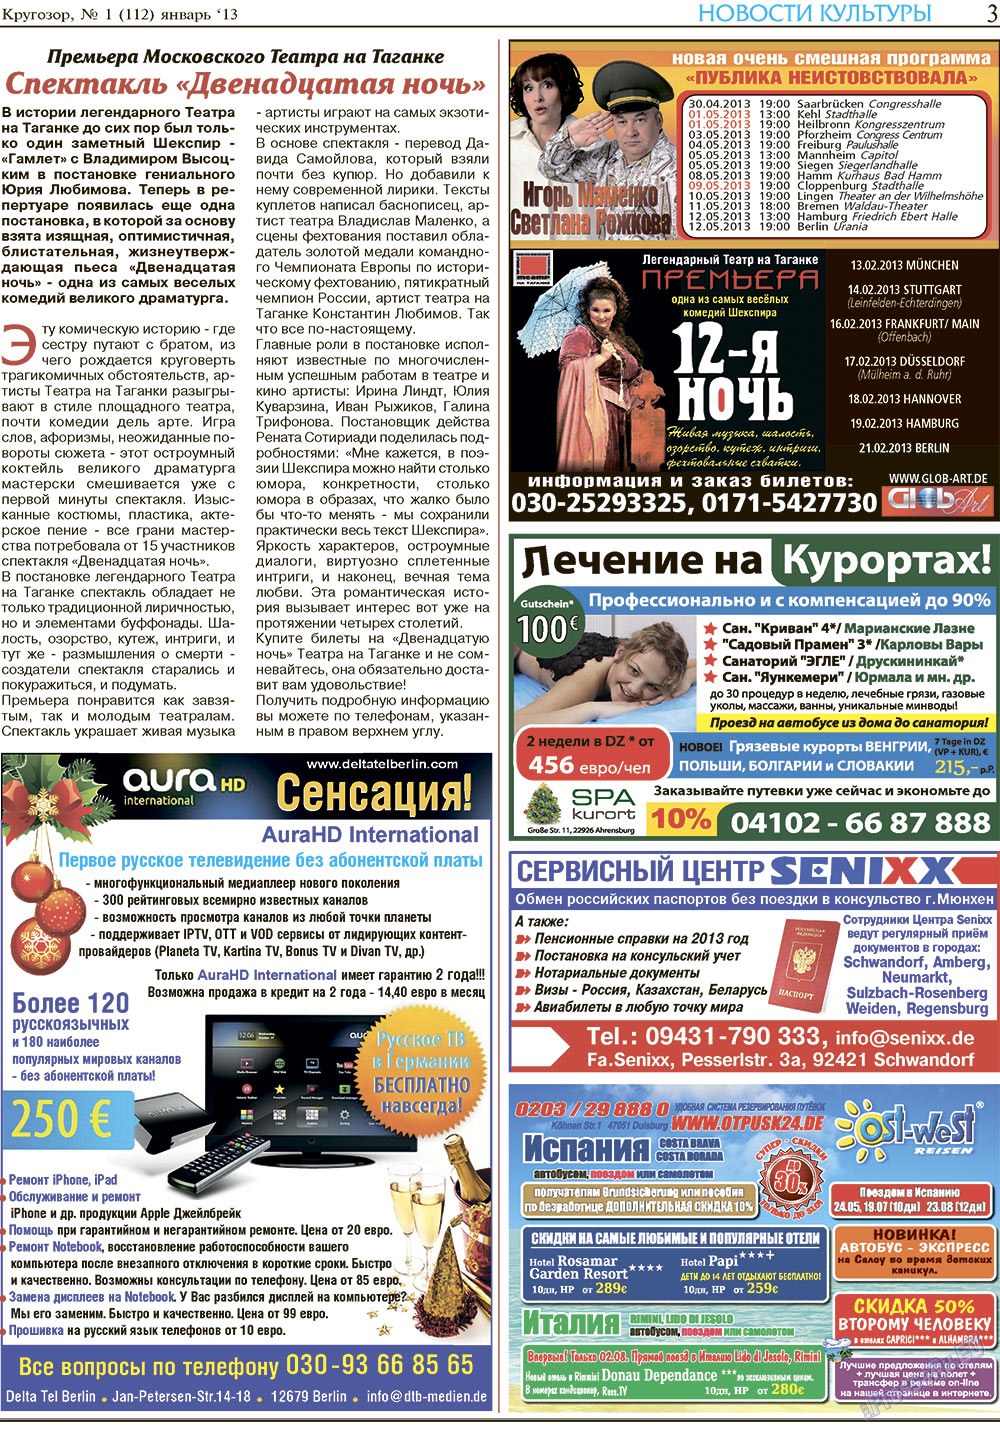 Кругозор, газета. 2013 №1 стр.3